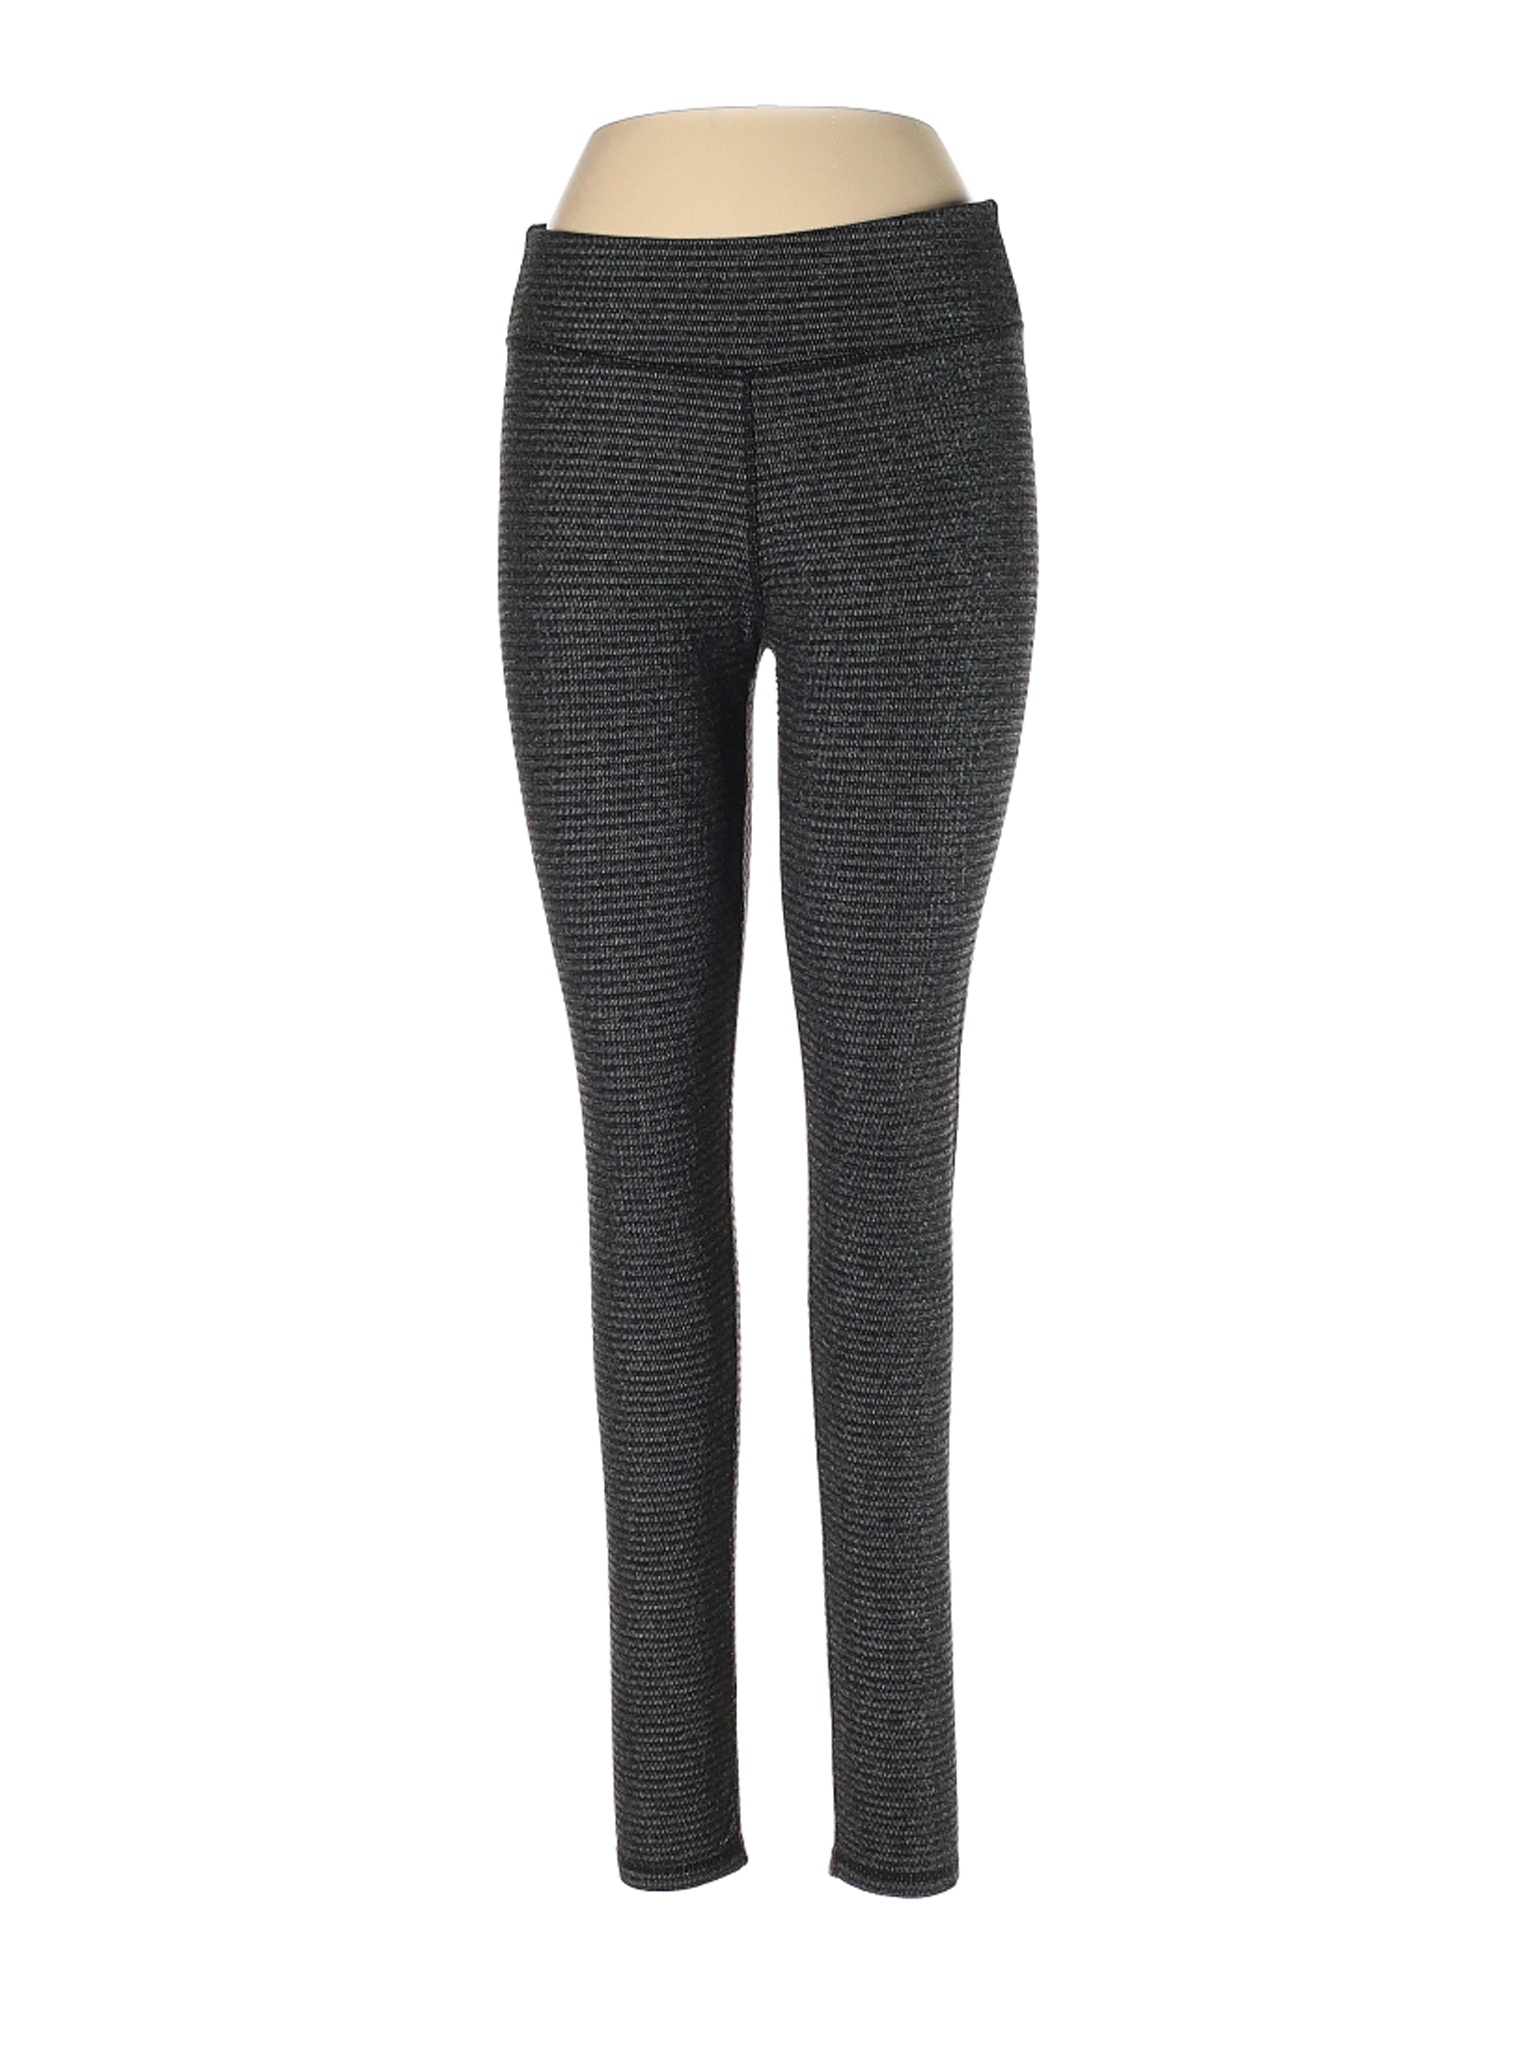 Kyodan Women Gray Active Pants L | eBay